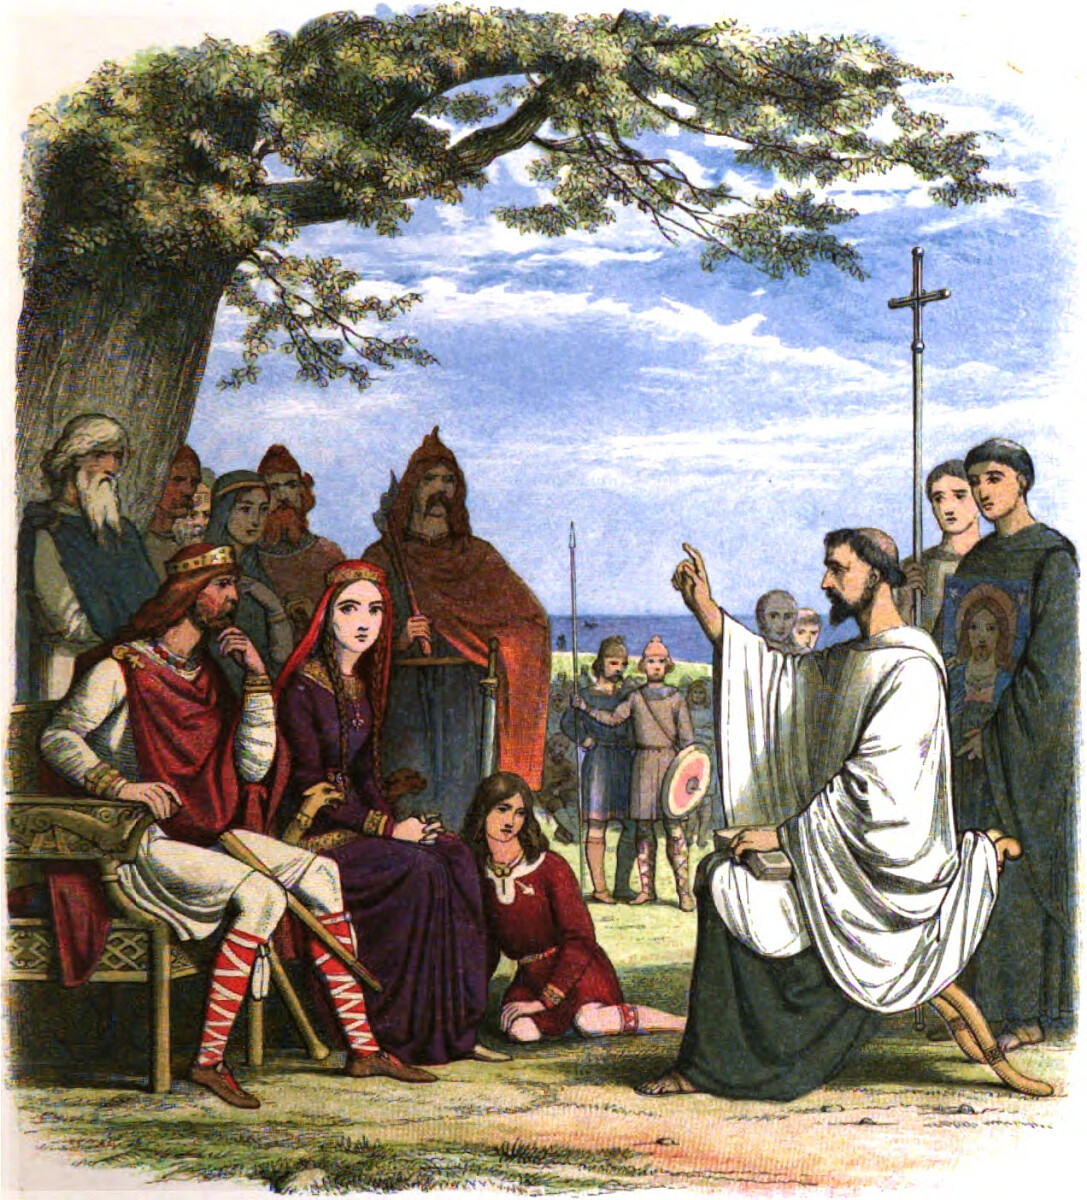 Św. Augustyn z Canterbury - James William Edmund Doyle, Public domain, via Wikimedia Commons